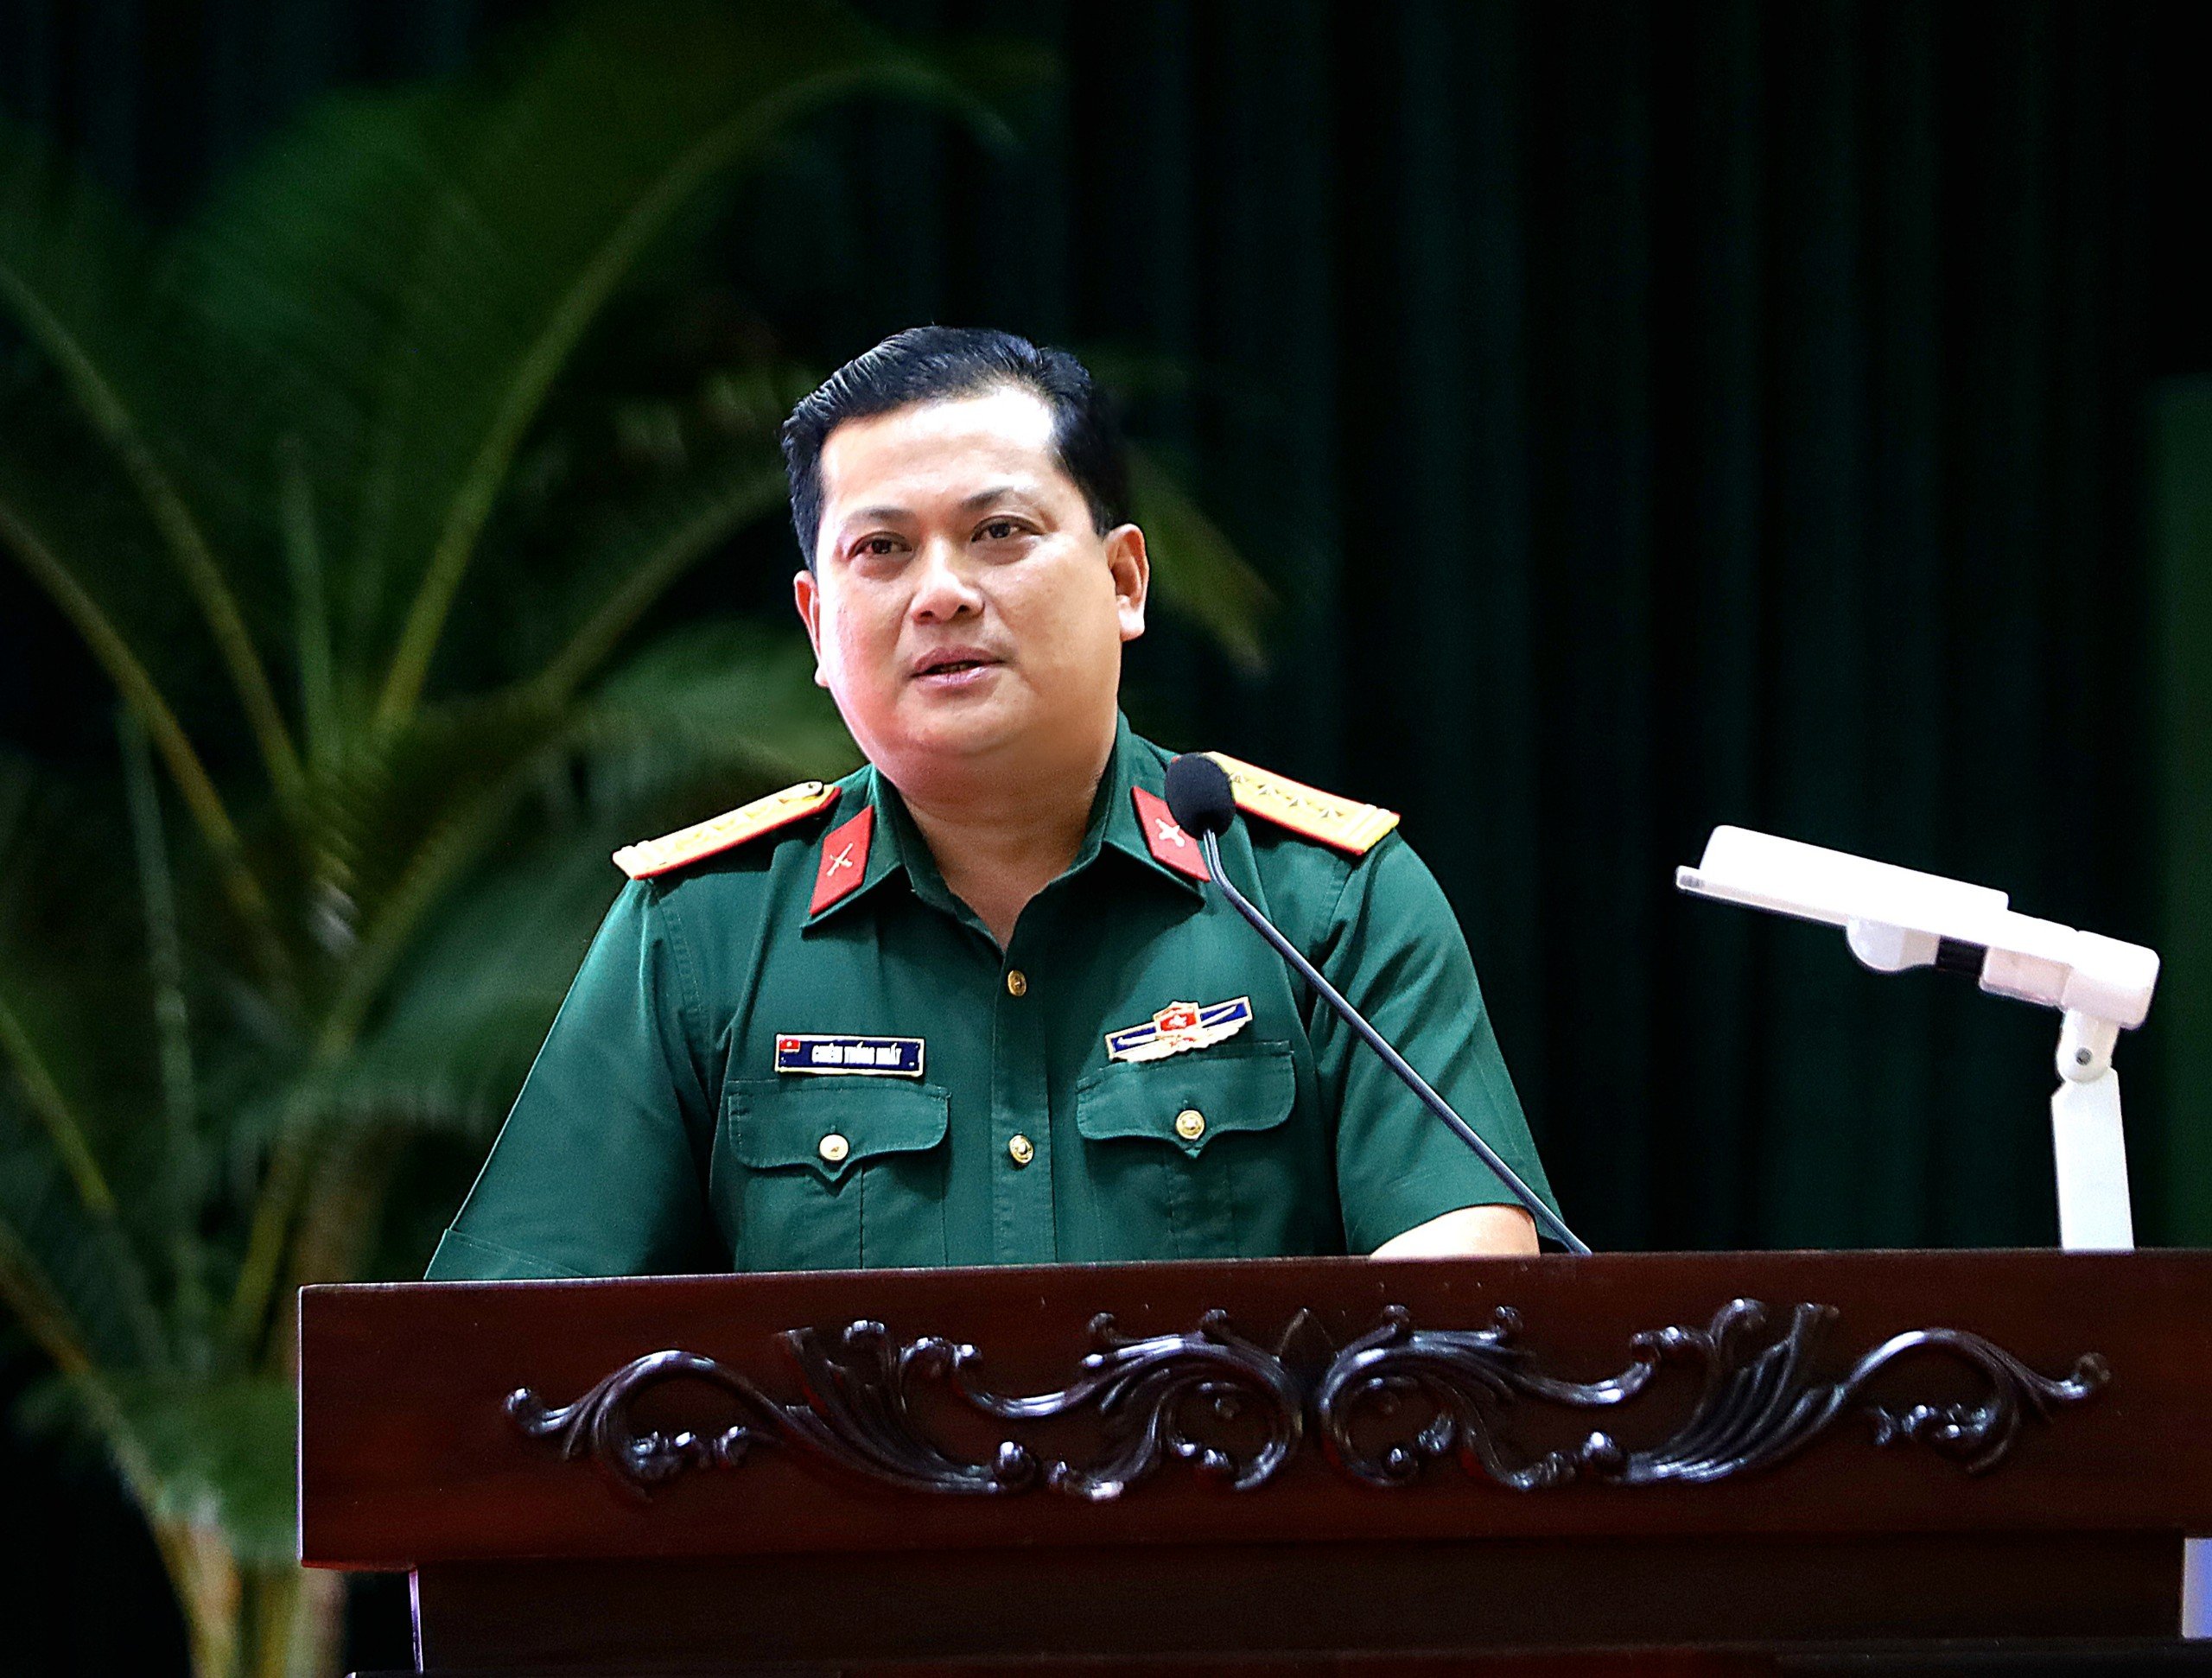 Đại tá Chiêm Thống Nhất - Phó Tư lệnh, Tham mưu trưởng Quân khu 9 phát biểu chỉ đạo hội nghị.